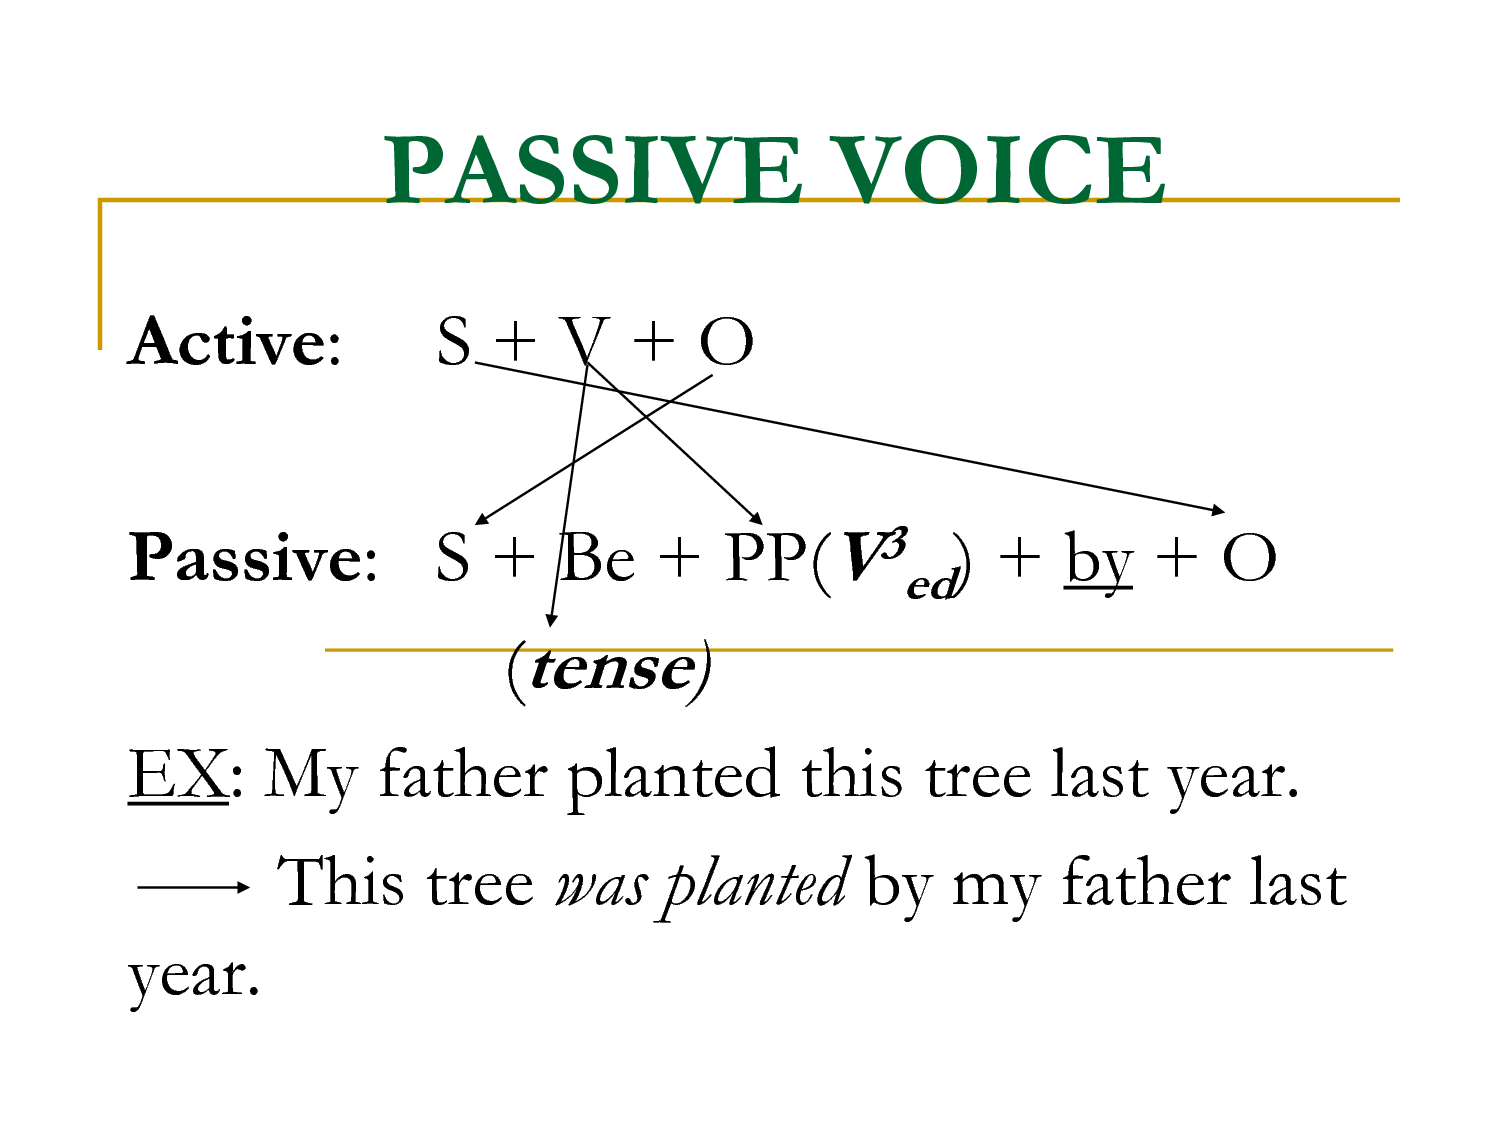 Passive voice stories. Passive Voice. Active and Passive Voice. Пассивный залог. Пассив Войс.